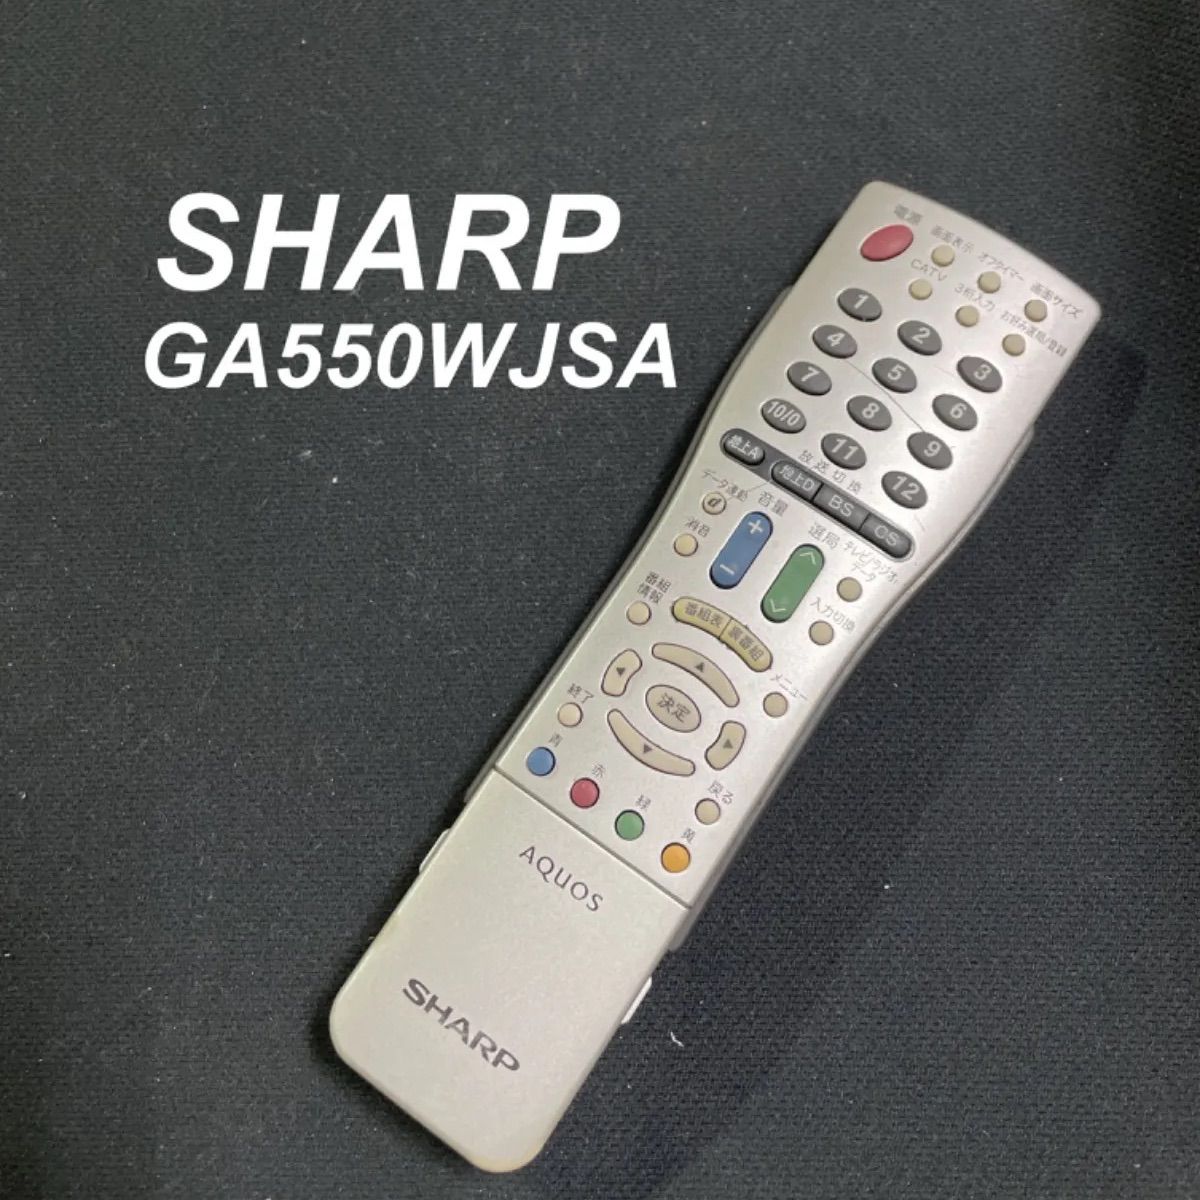 シャープ SHARP GA550WJSA リモコン テレビ 液晶 赤外線チェック済 清掃 除菌済み 中古 RC2680 - メルカリ